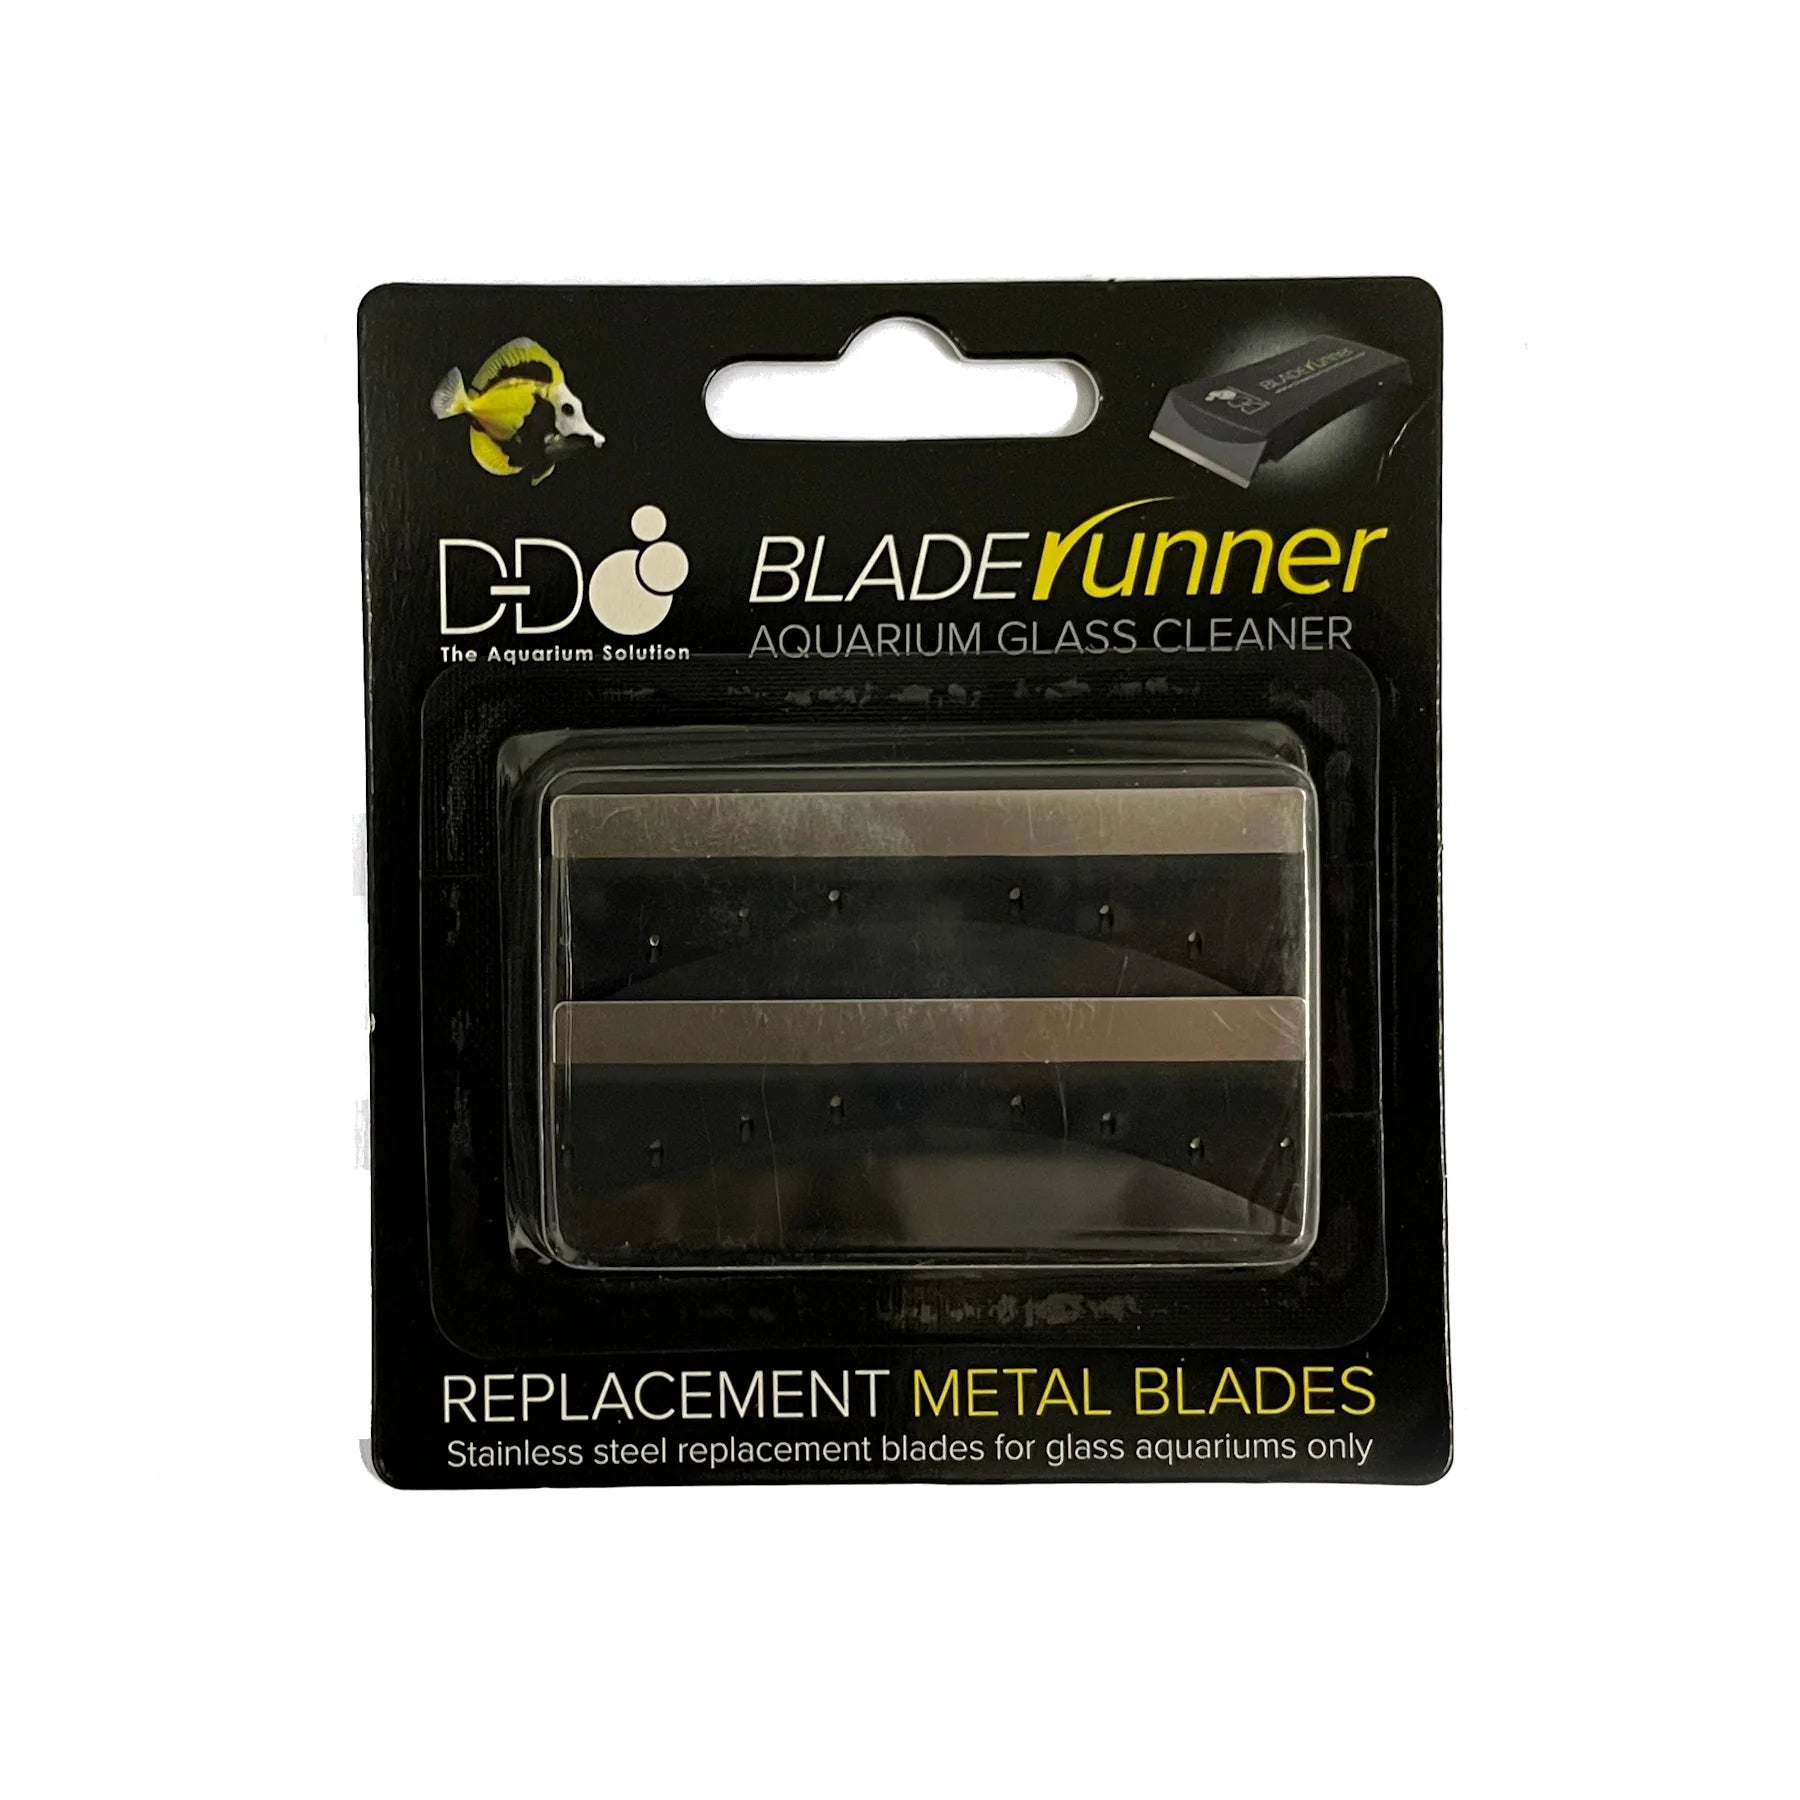 D-D Blade runner Replacement Metal Blades